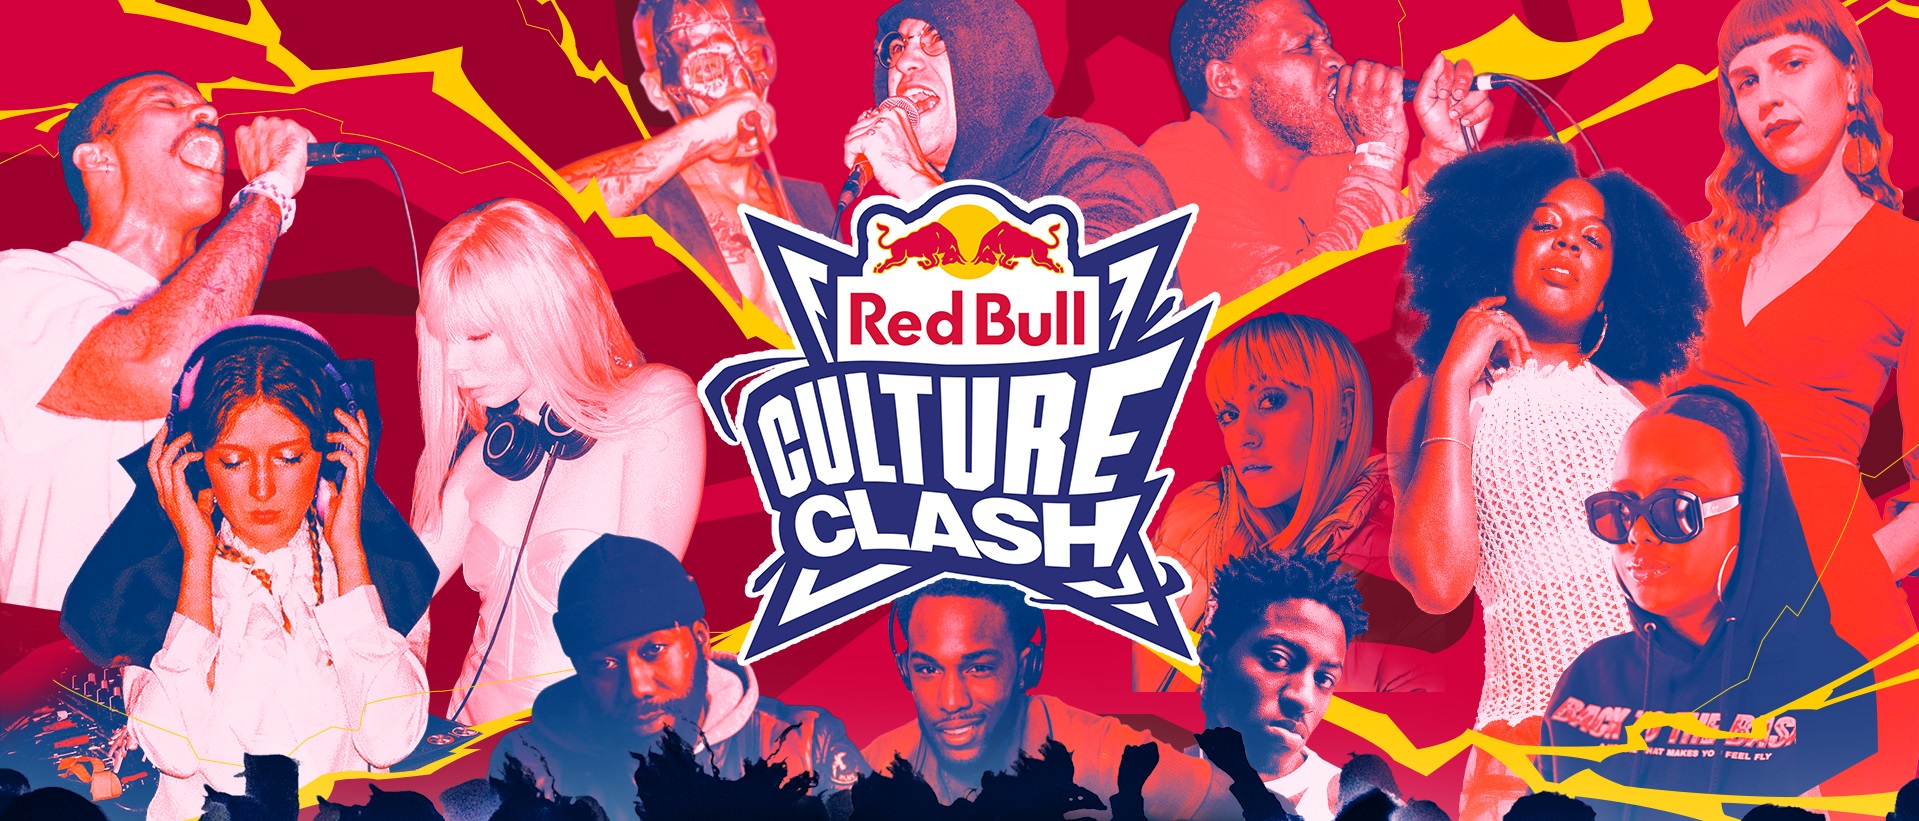 Red Bull Culture Clash